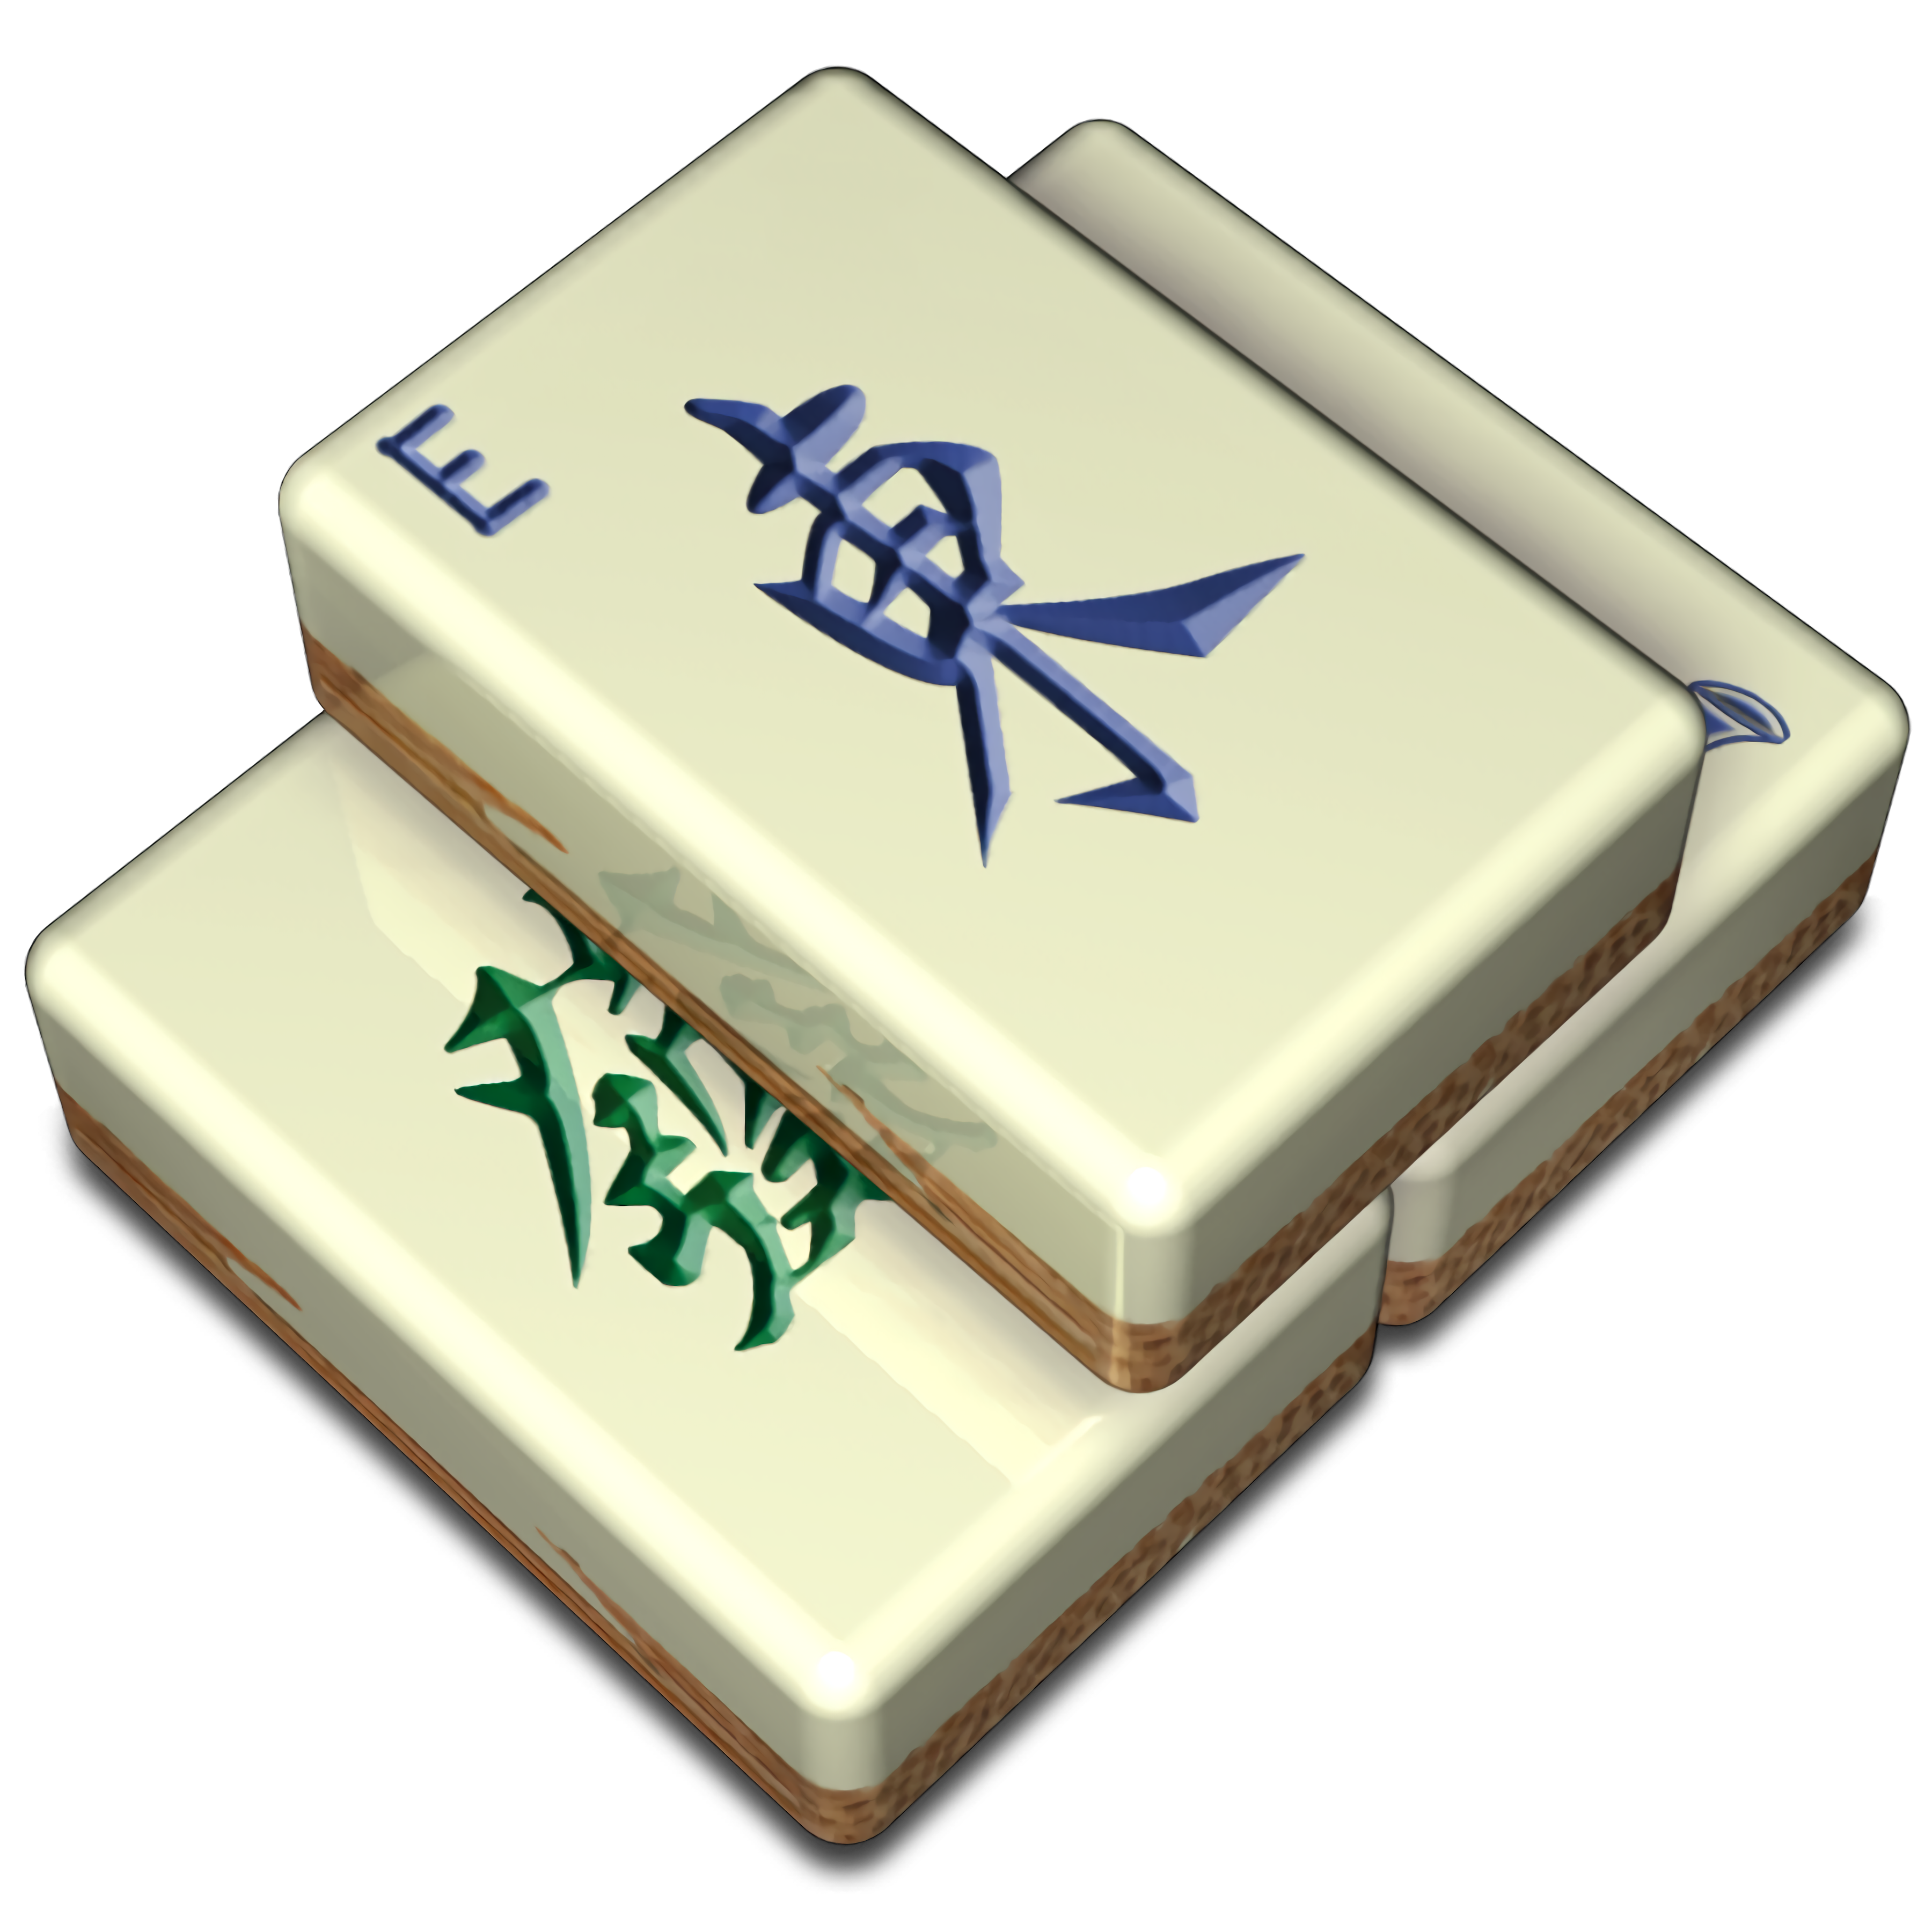 Jogos Mahjong